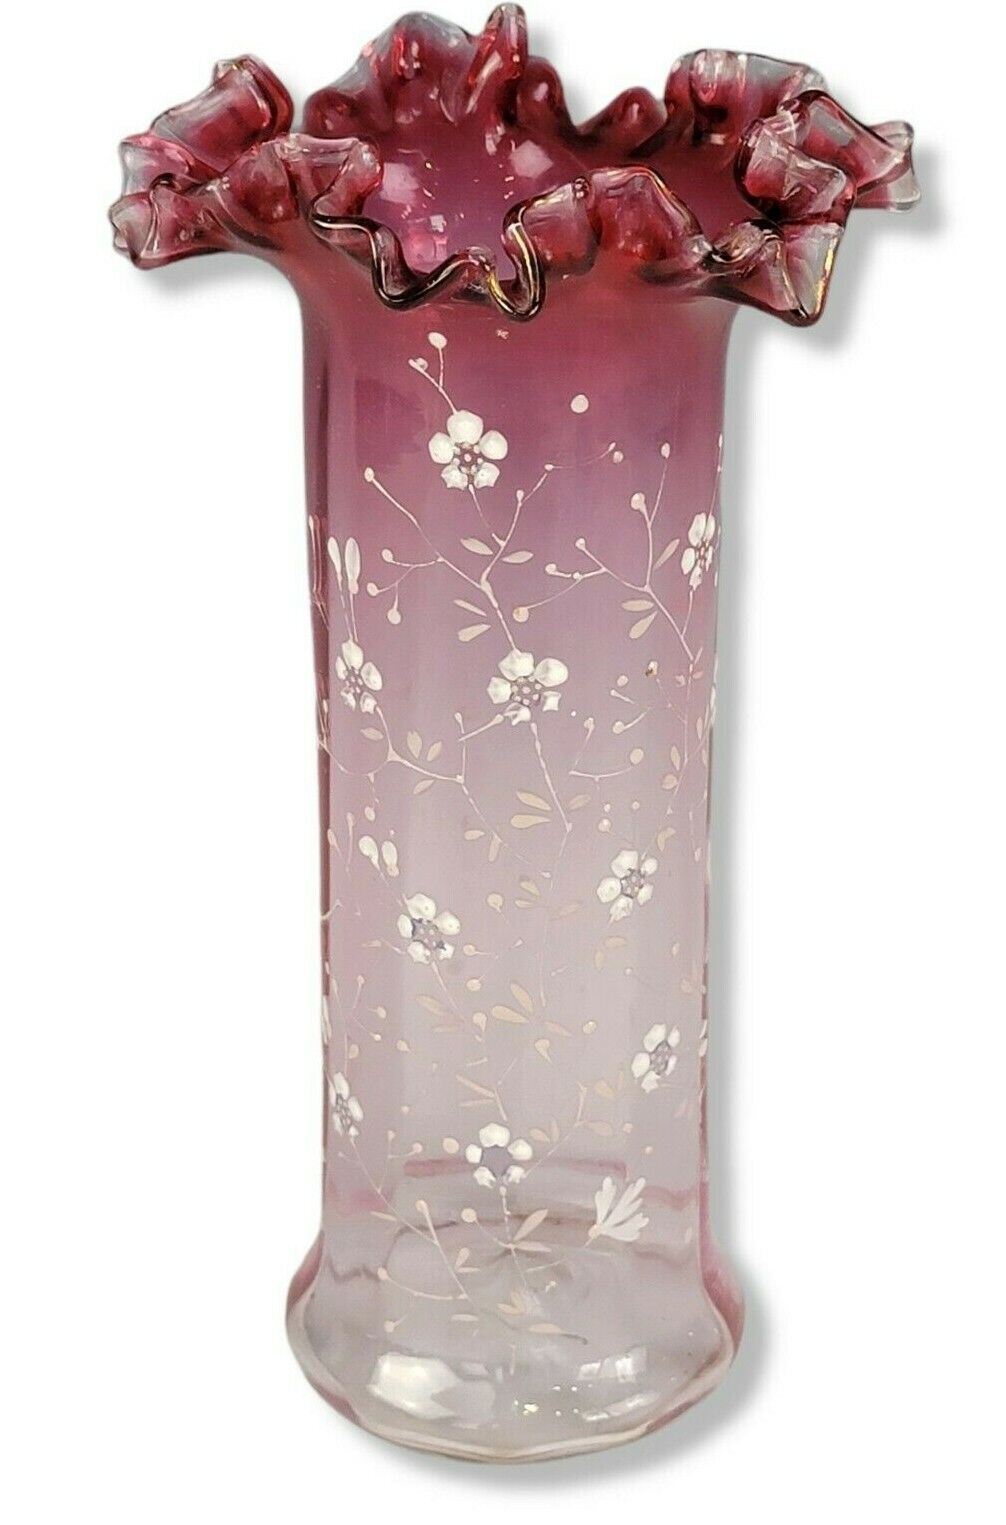 Antique French Legras Vase Rubina Cranberry Glass Hand Painted Enamel Dogwood